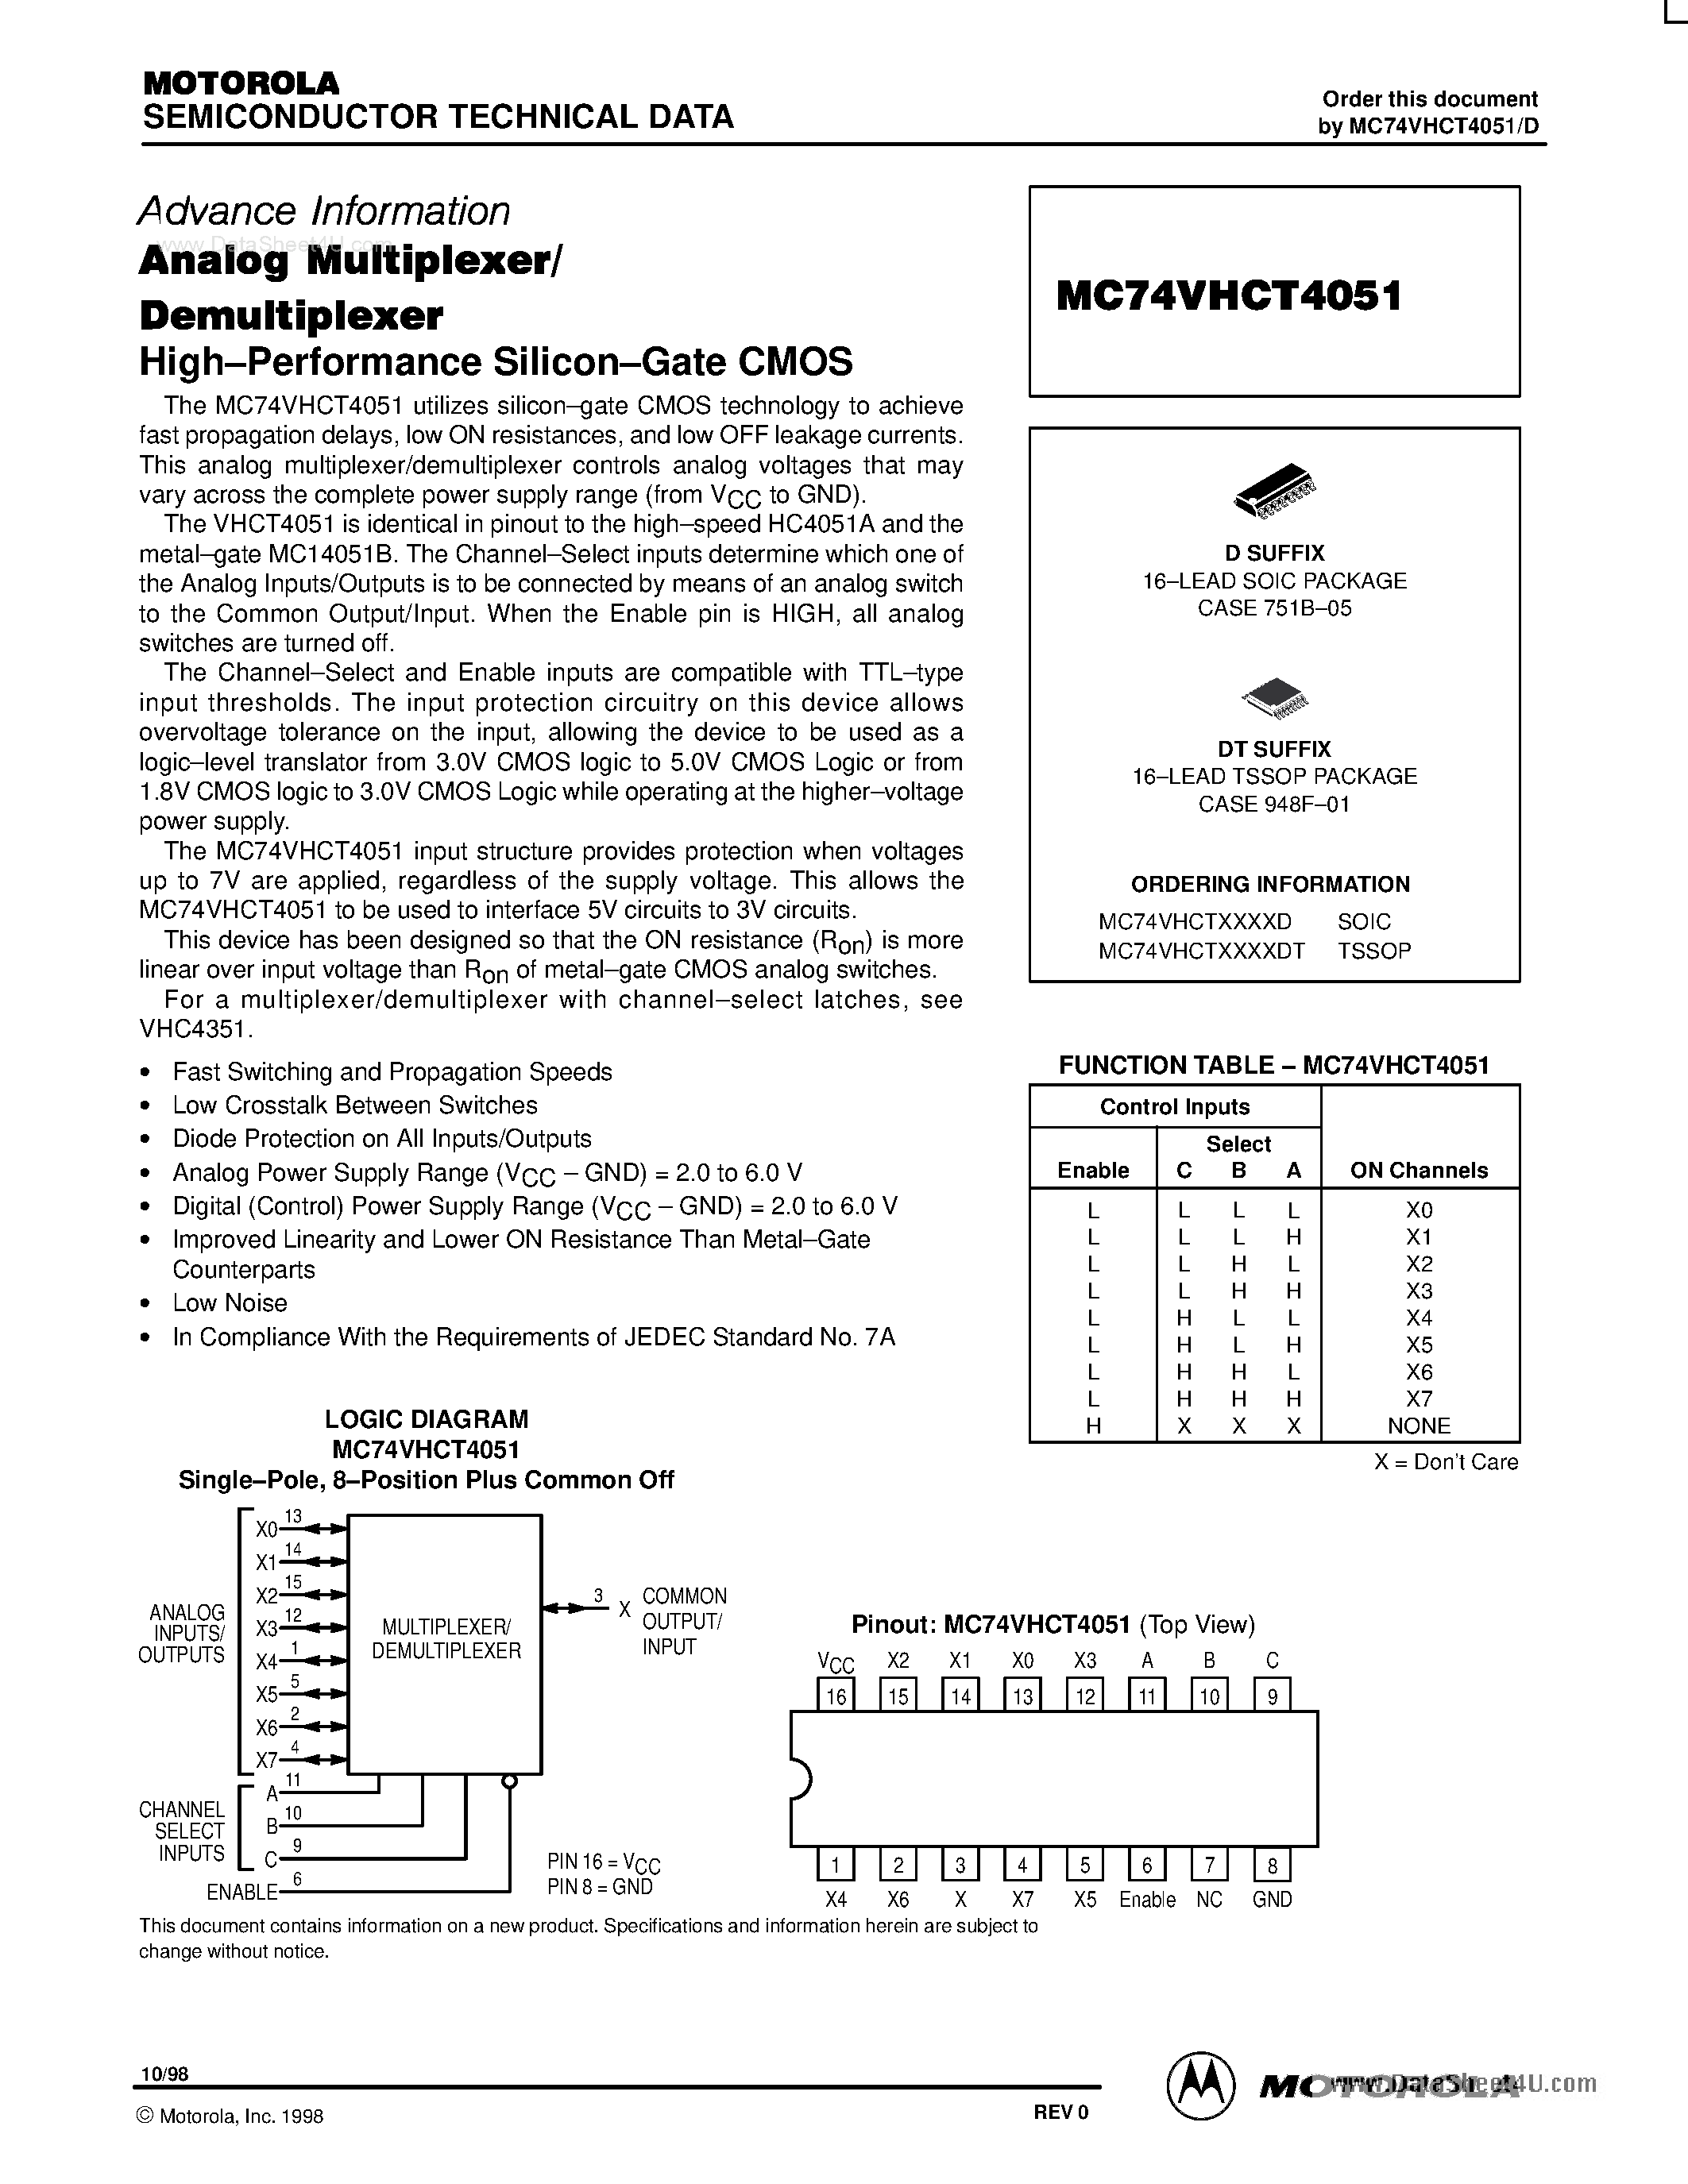 Даташит MC74VHT4051 - Analog Multiplexer Demultiplexer страница 1